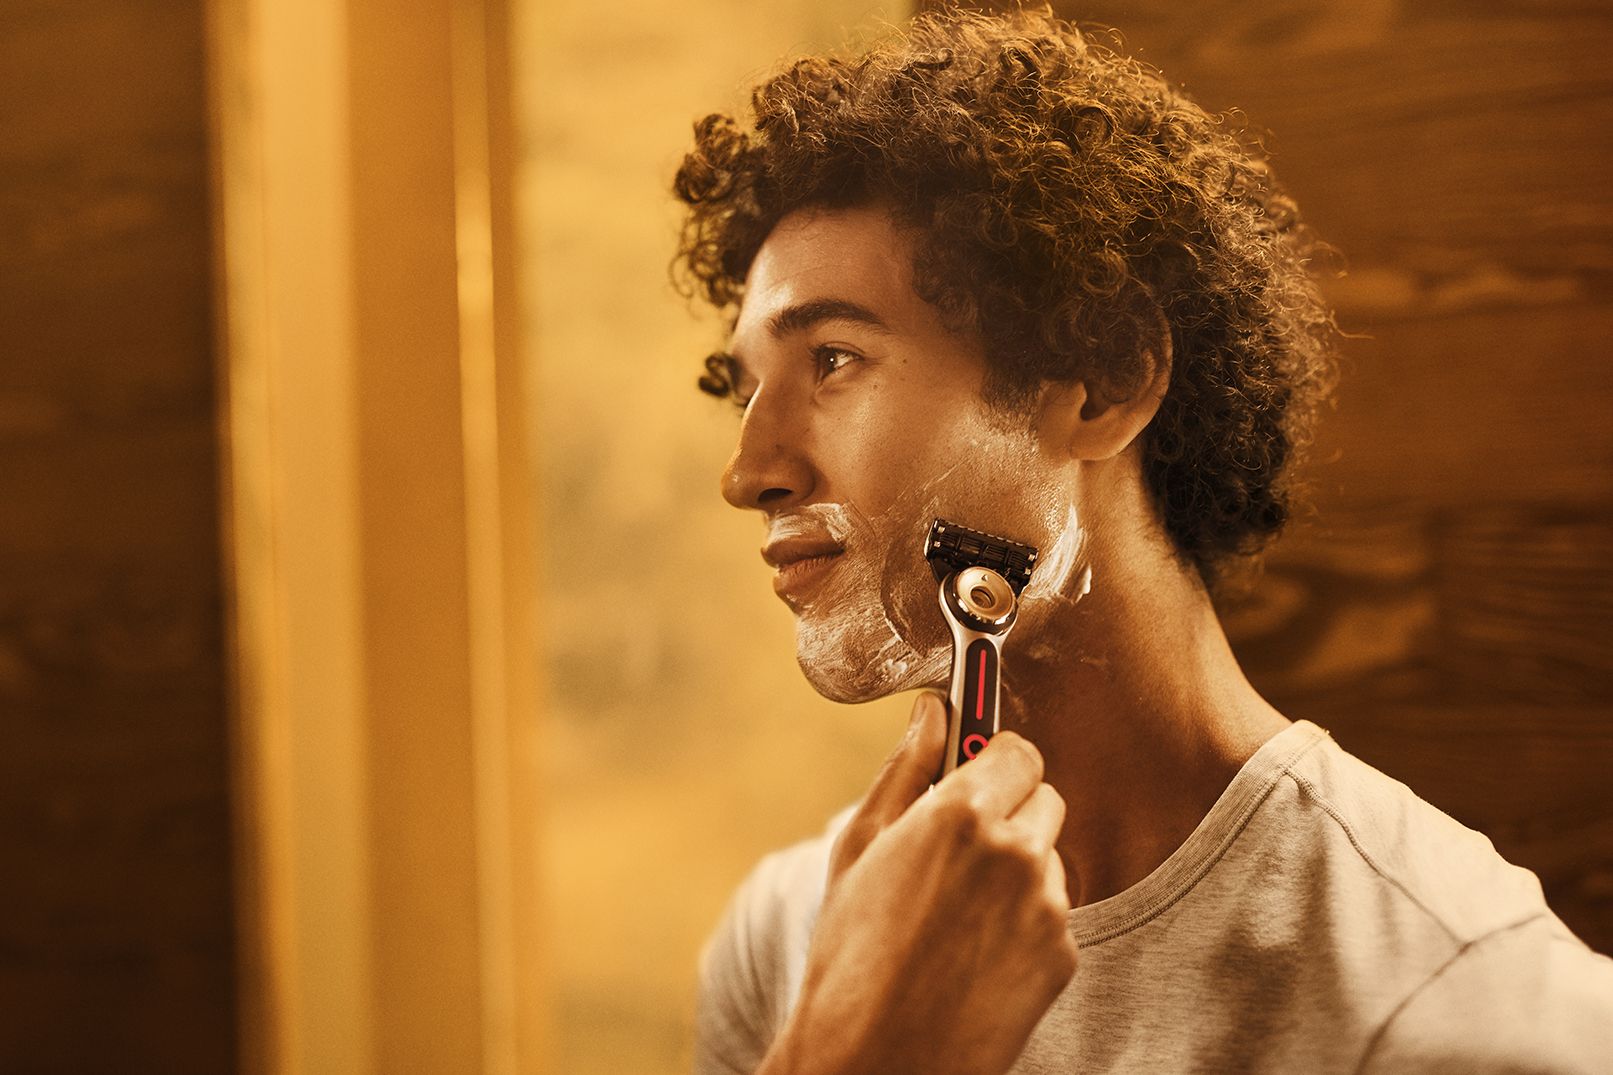 La experiencia del afeitado perfecto